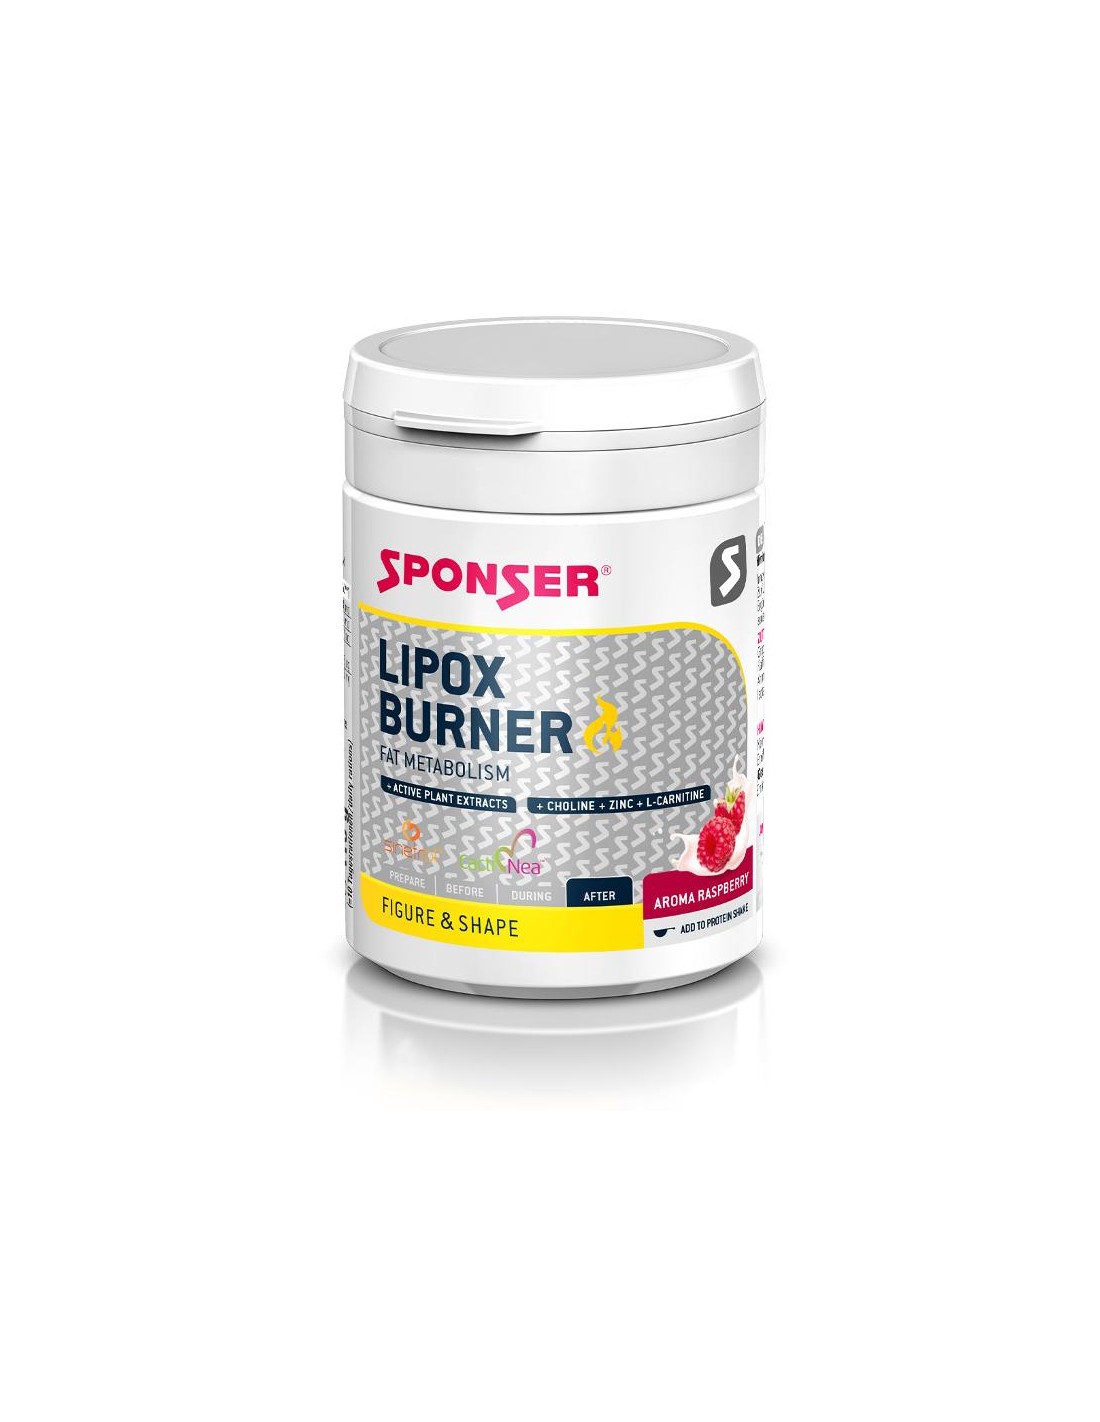 Sponser Lipox Burner Multi Wirkkomplex Himbeere 110 g Dose, Pulver Geschmack - Himbeere, Einnahmeempfehlung - nach Training, Konsistenz - Pulver, von Sponser